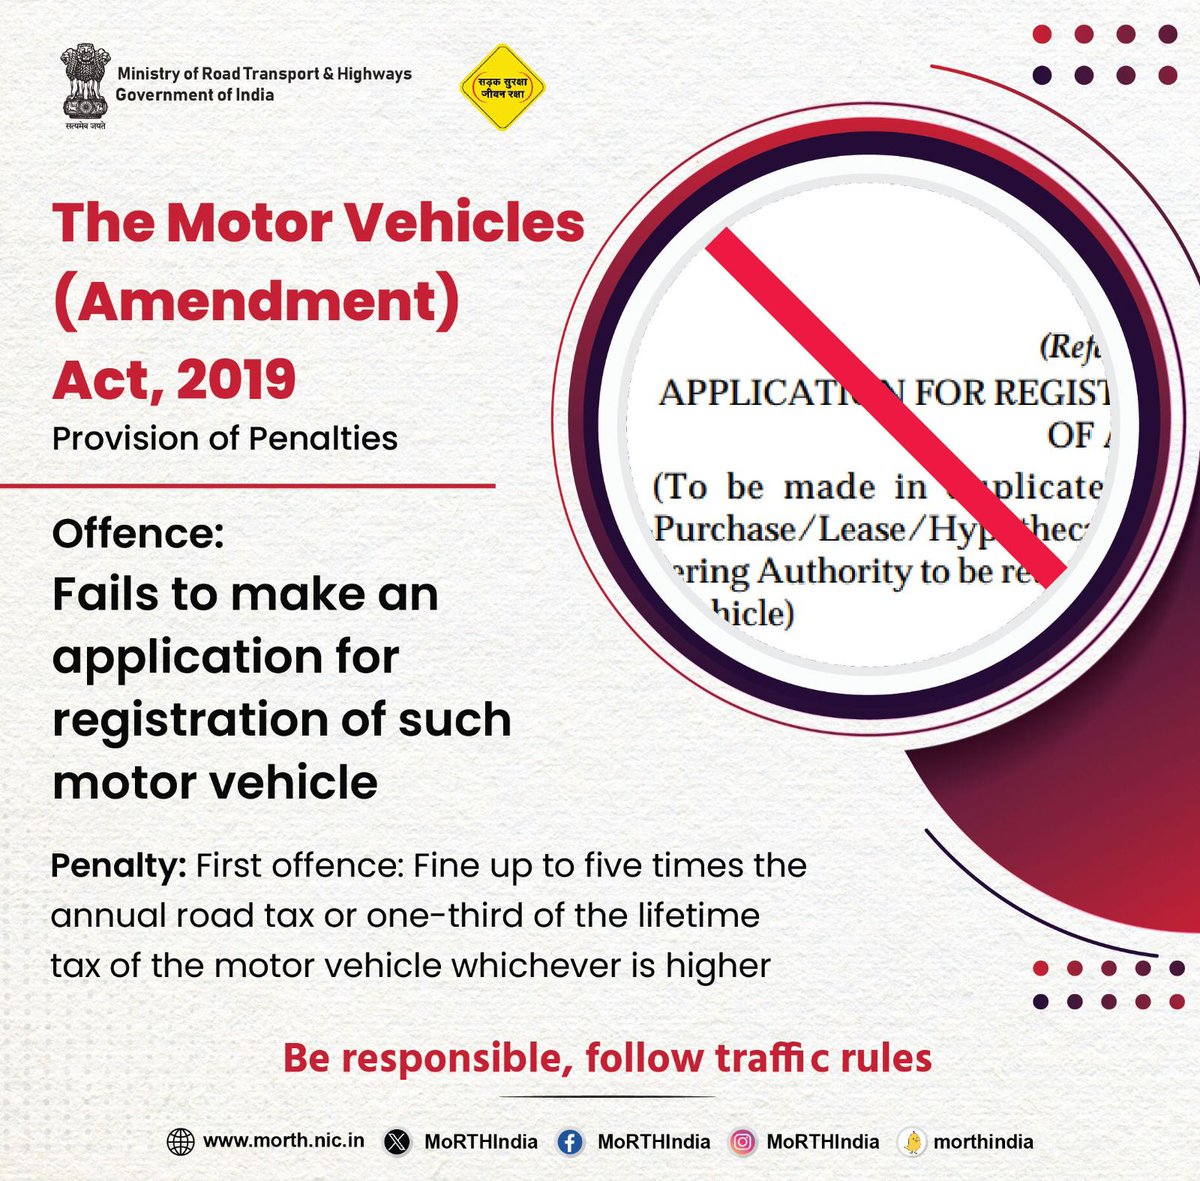 The Motor Vehicles (Amendment) Act, 2019 #SadakSurakshaJeevanRaksha #DriveResponsibly